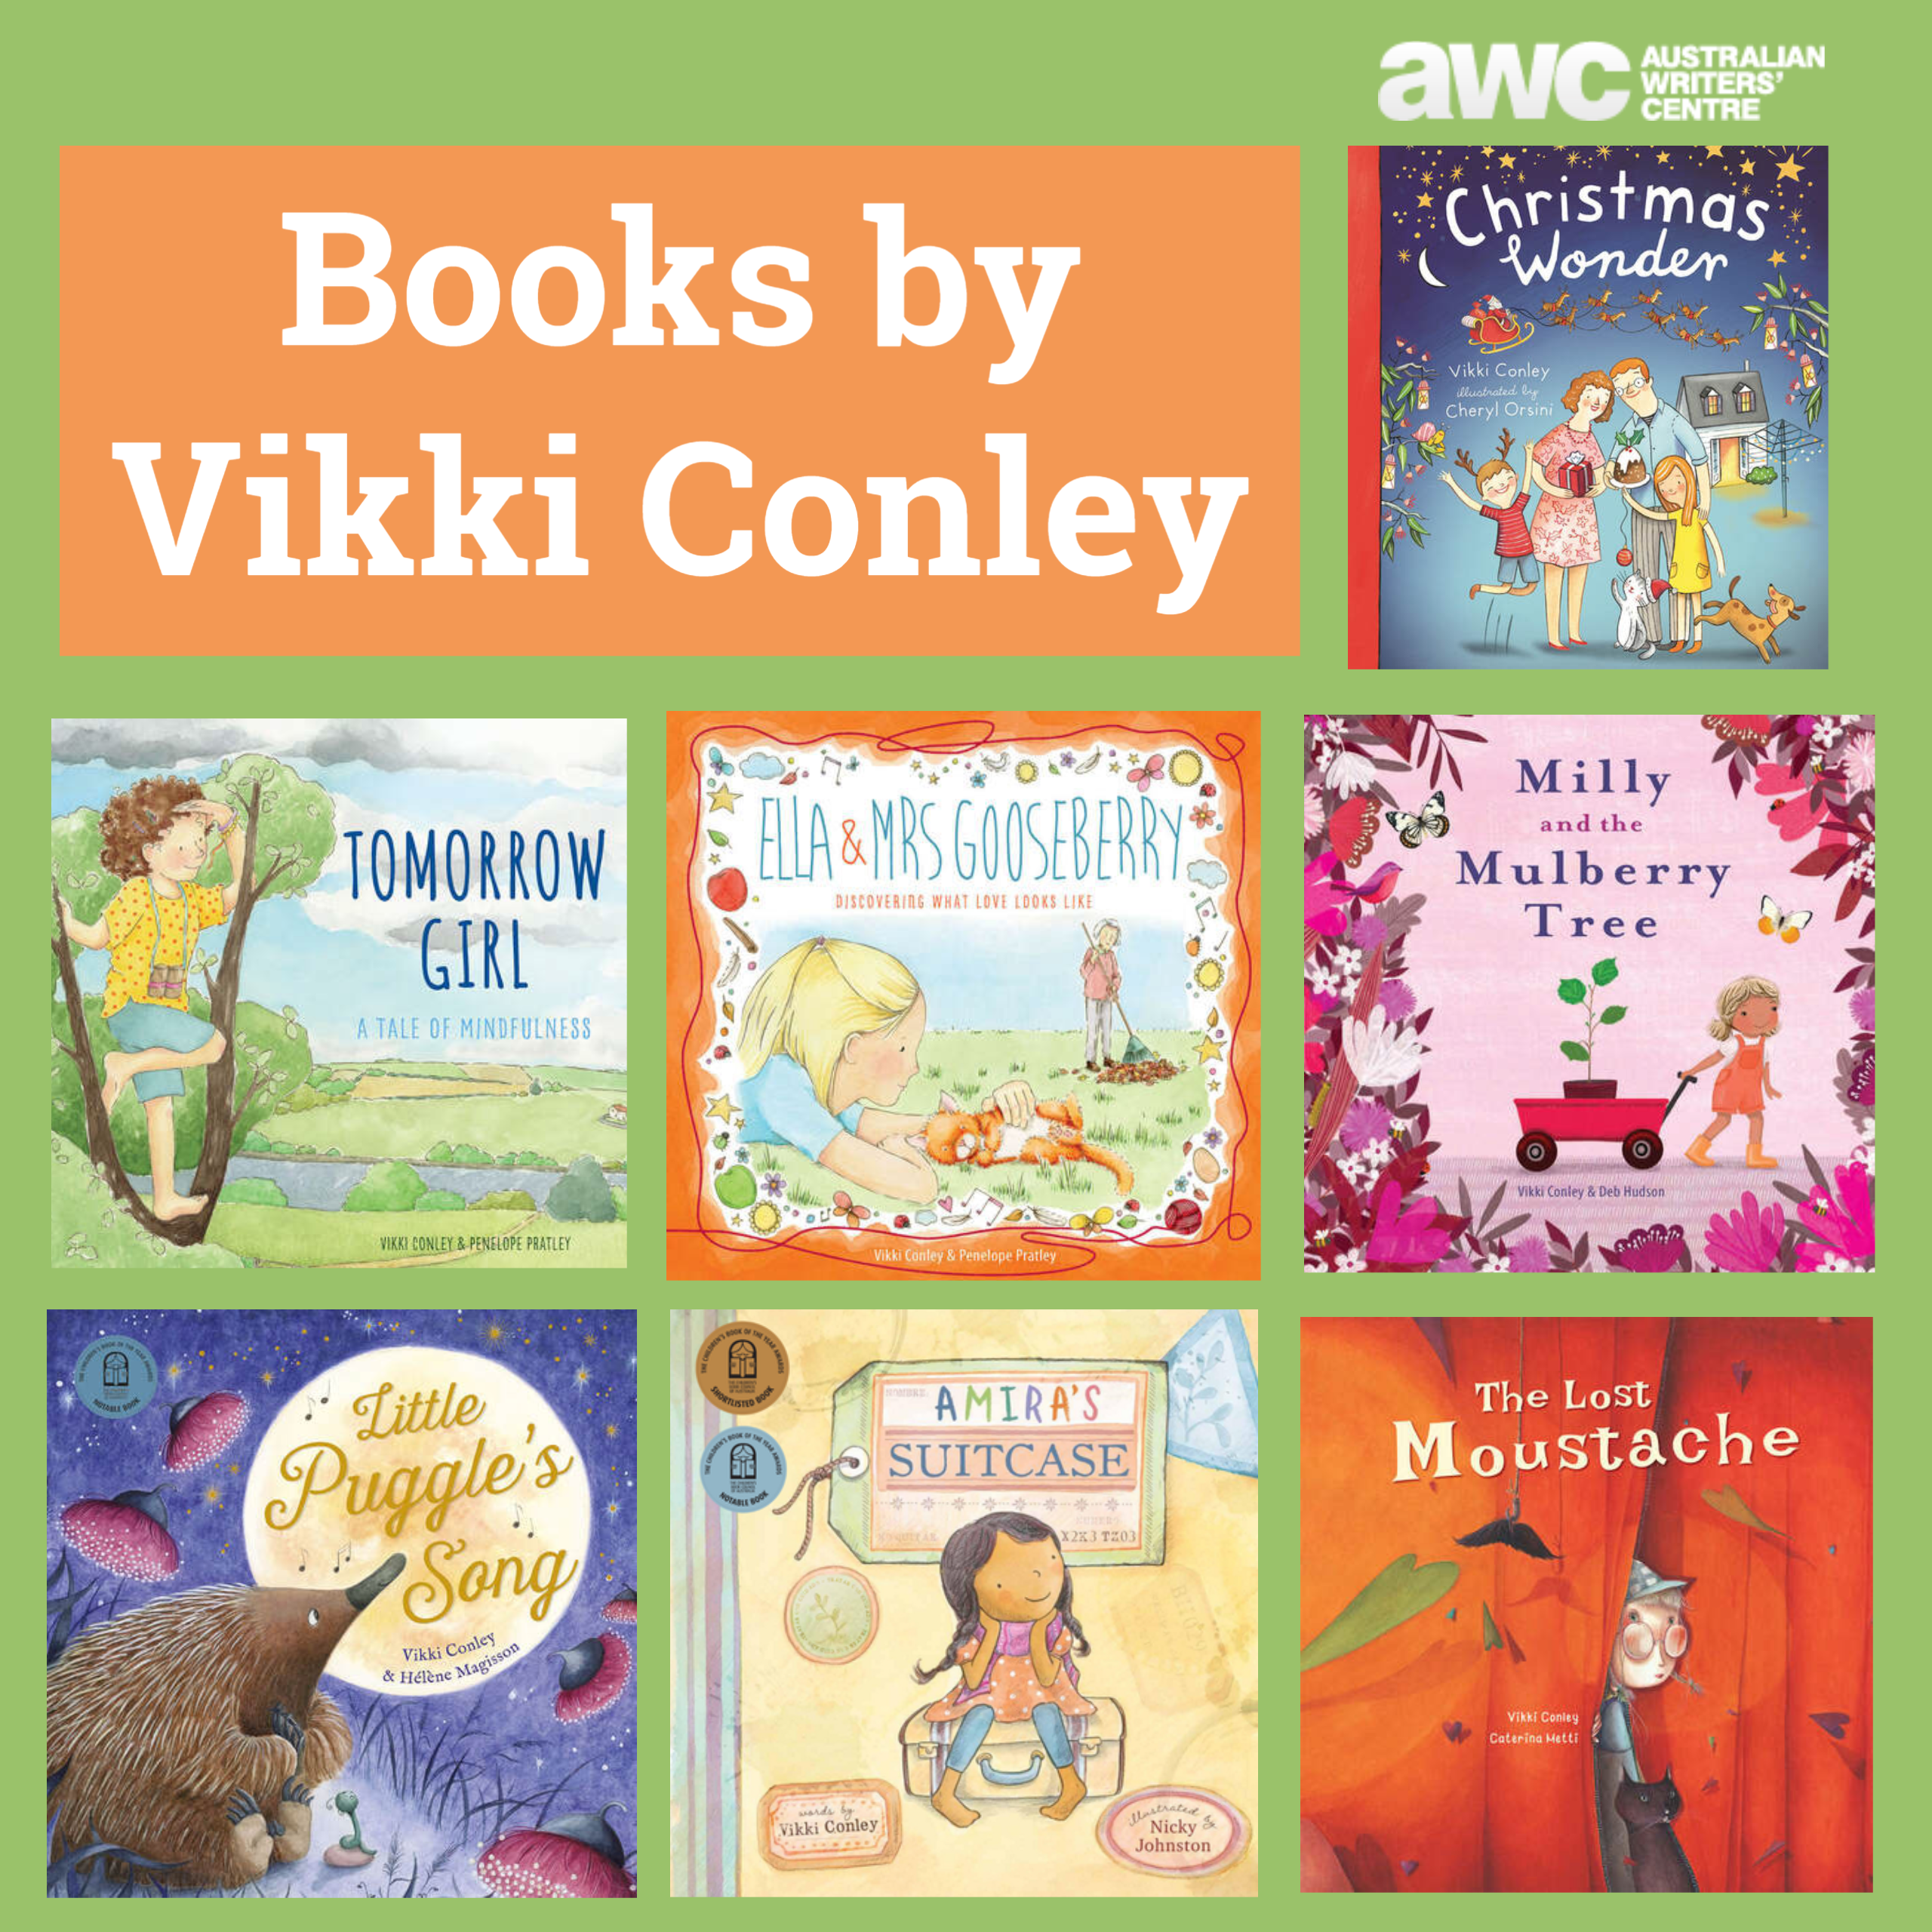 Books by children's author Vikki Conley